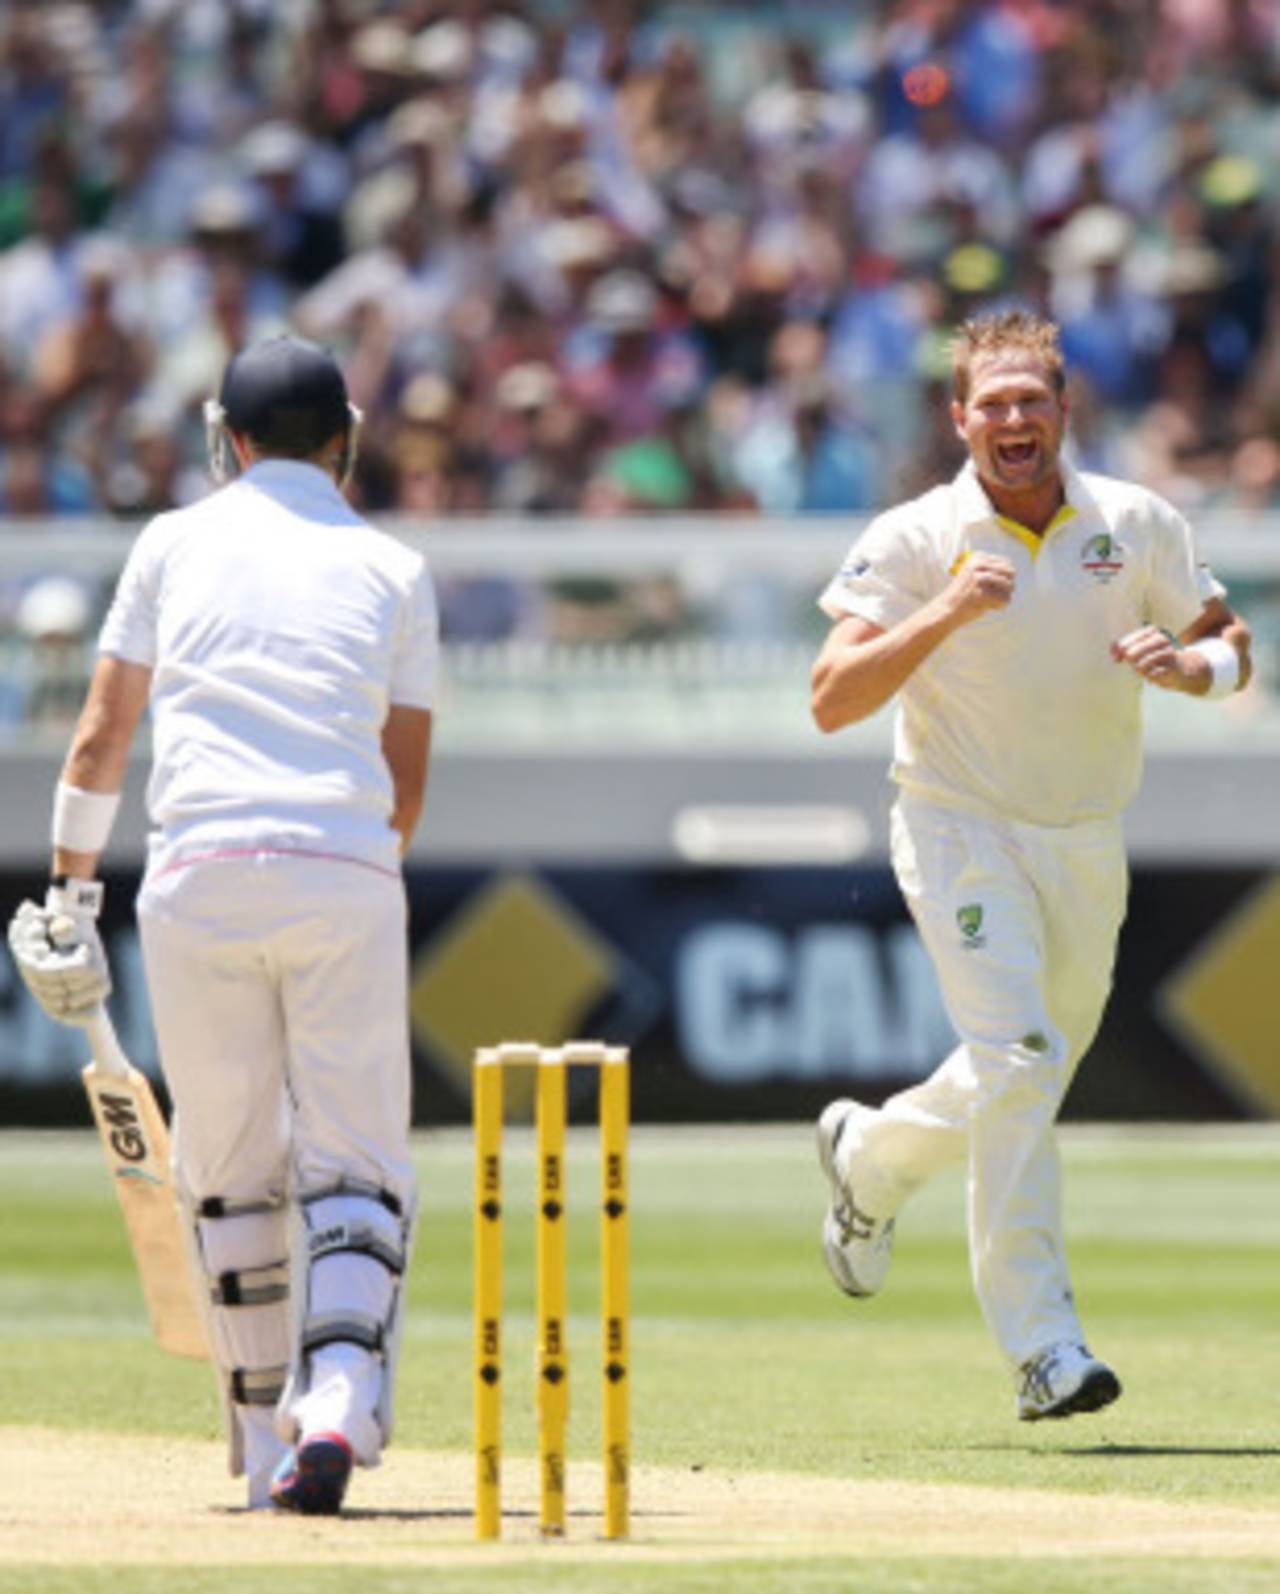 Ryan Harris found Joe Root's outside edge, Australia v England, 4th Test, Melbourne, 1st day, December 26, 2013